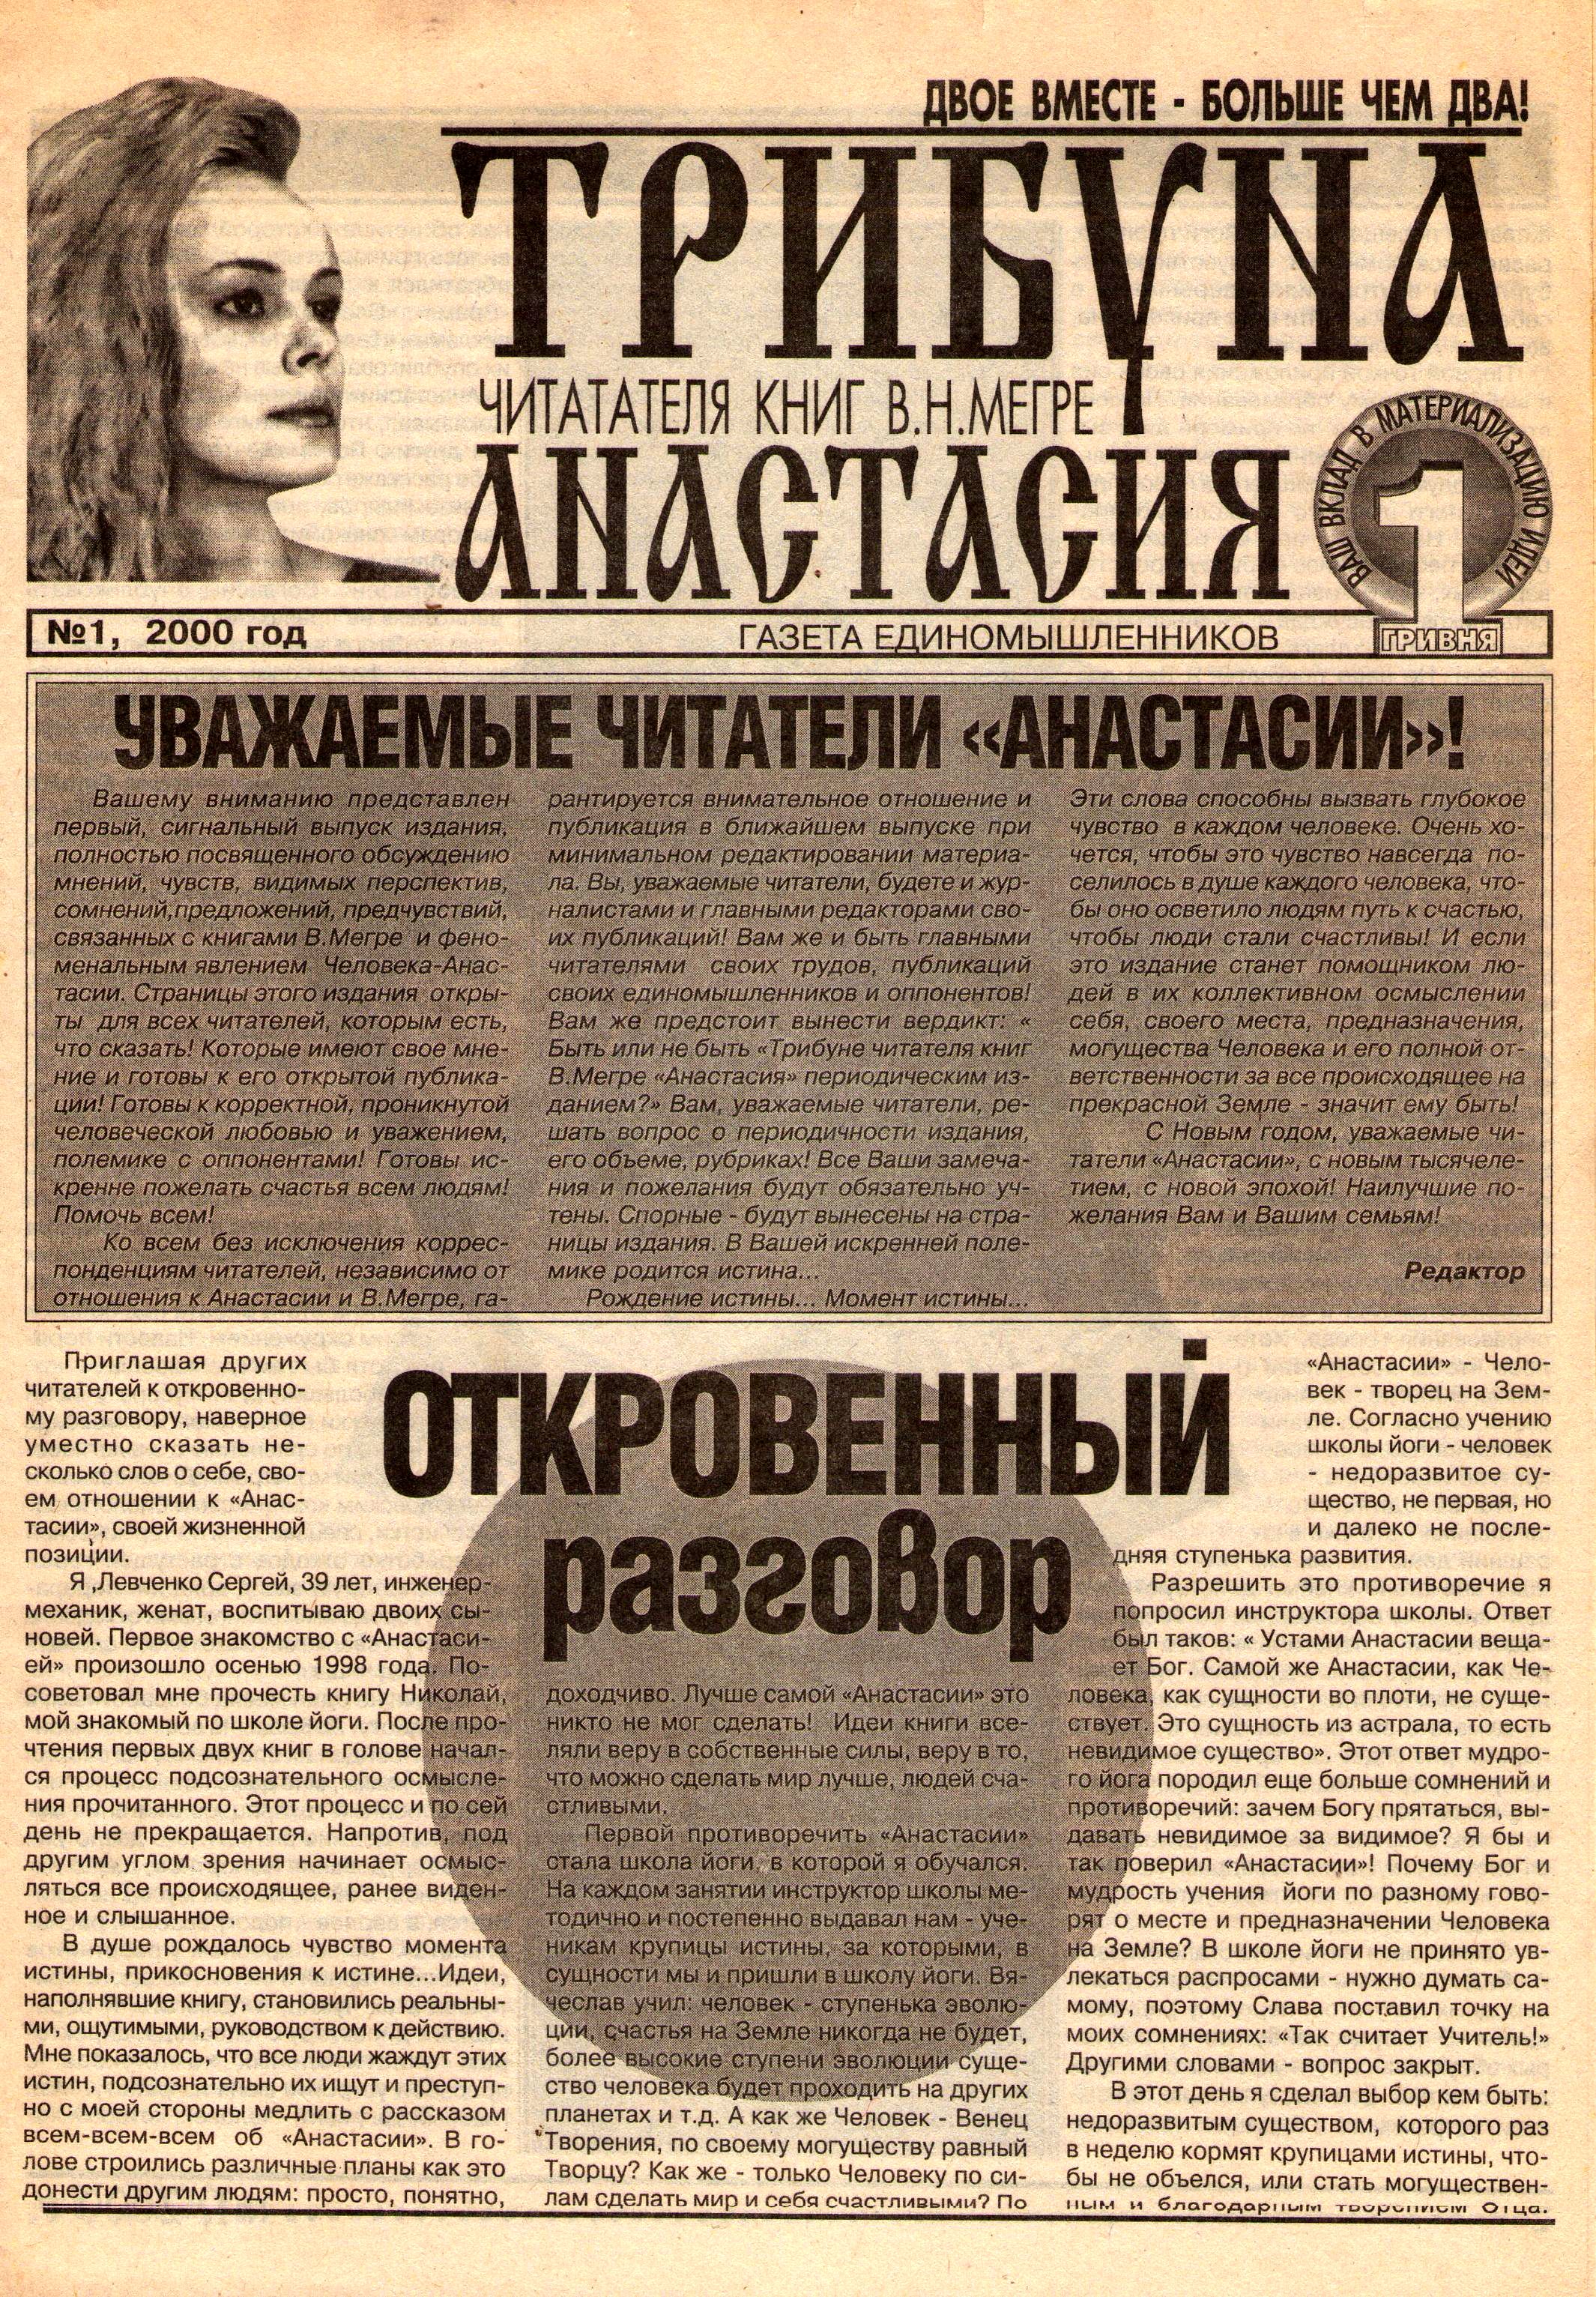 20 лет назад вышла первая газета читателей книг В.Мегре на Украине (1).jpg